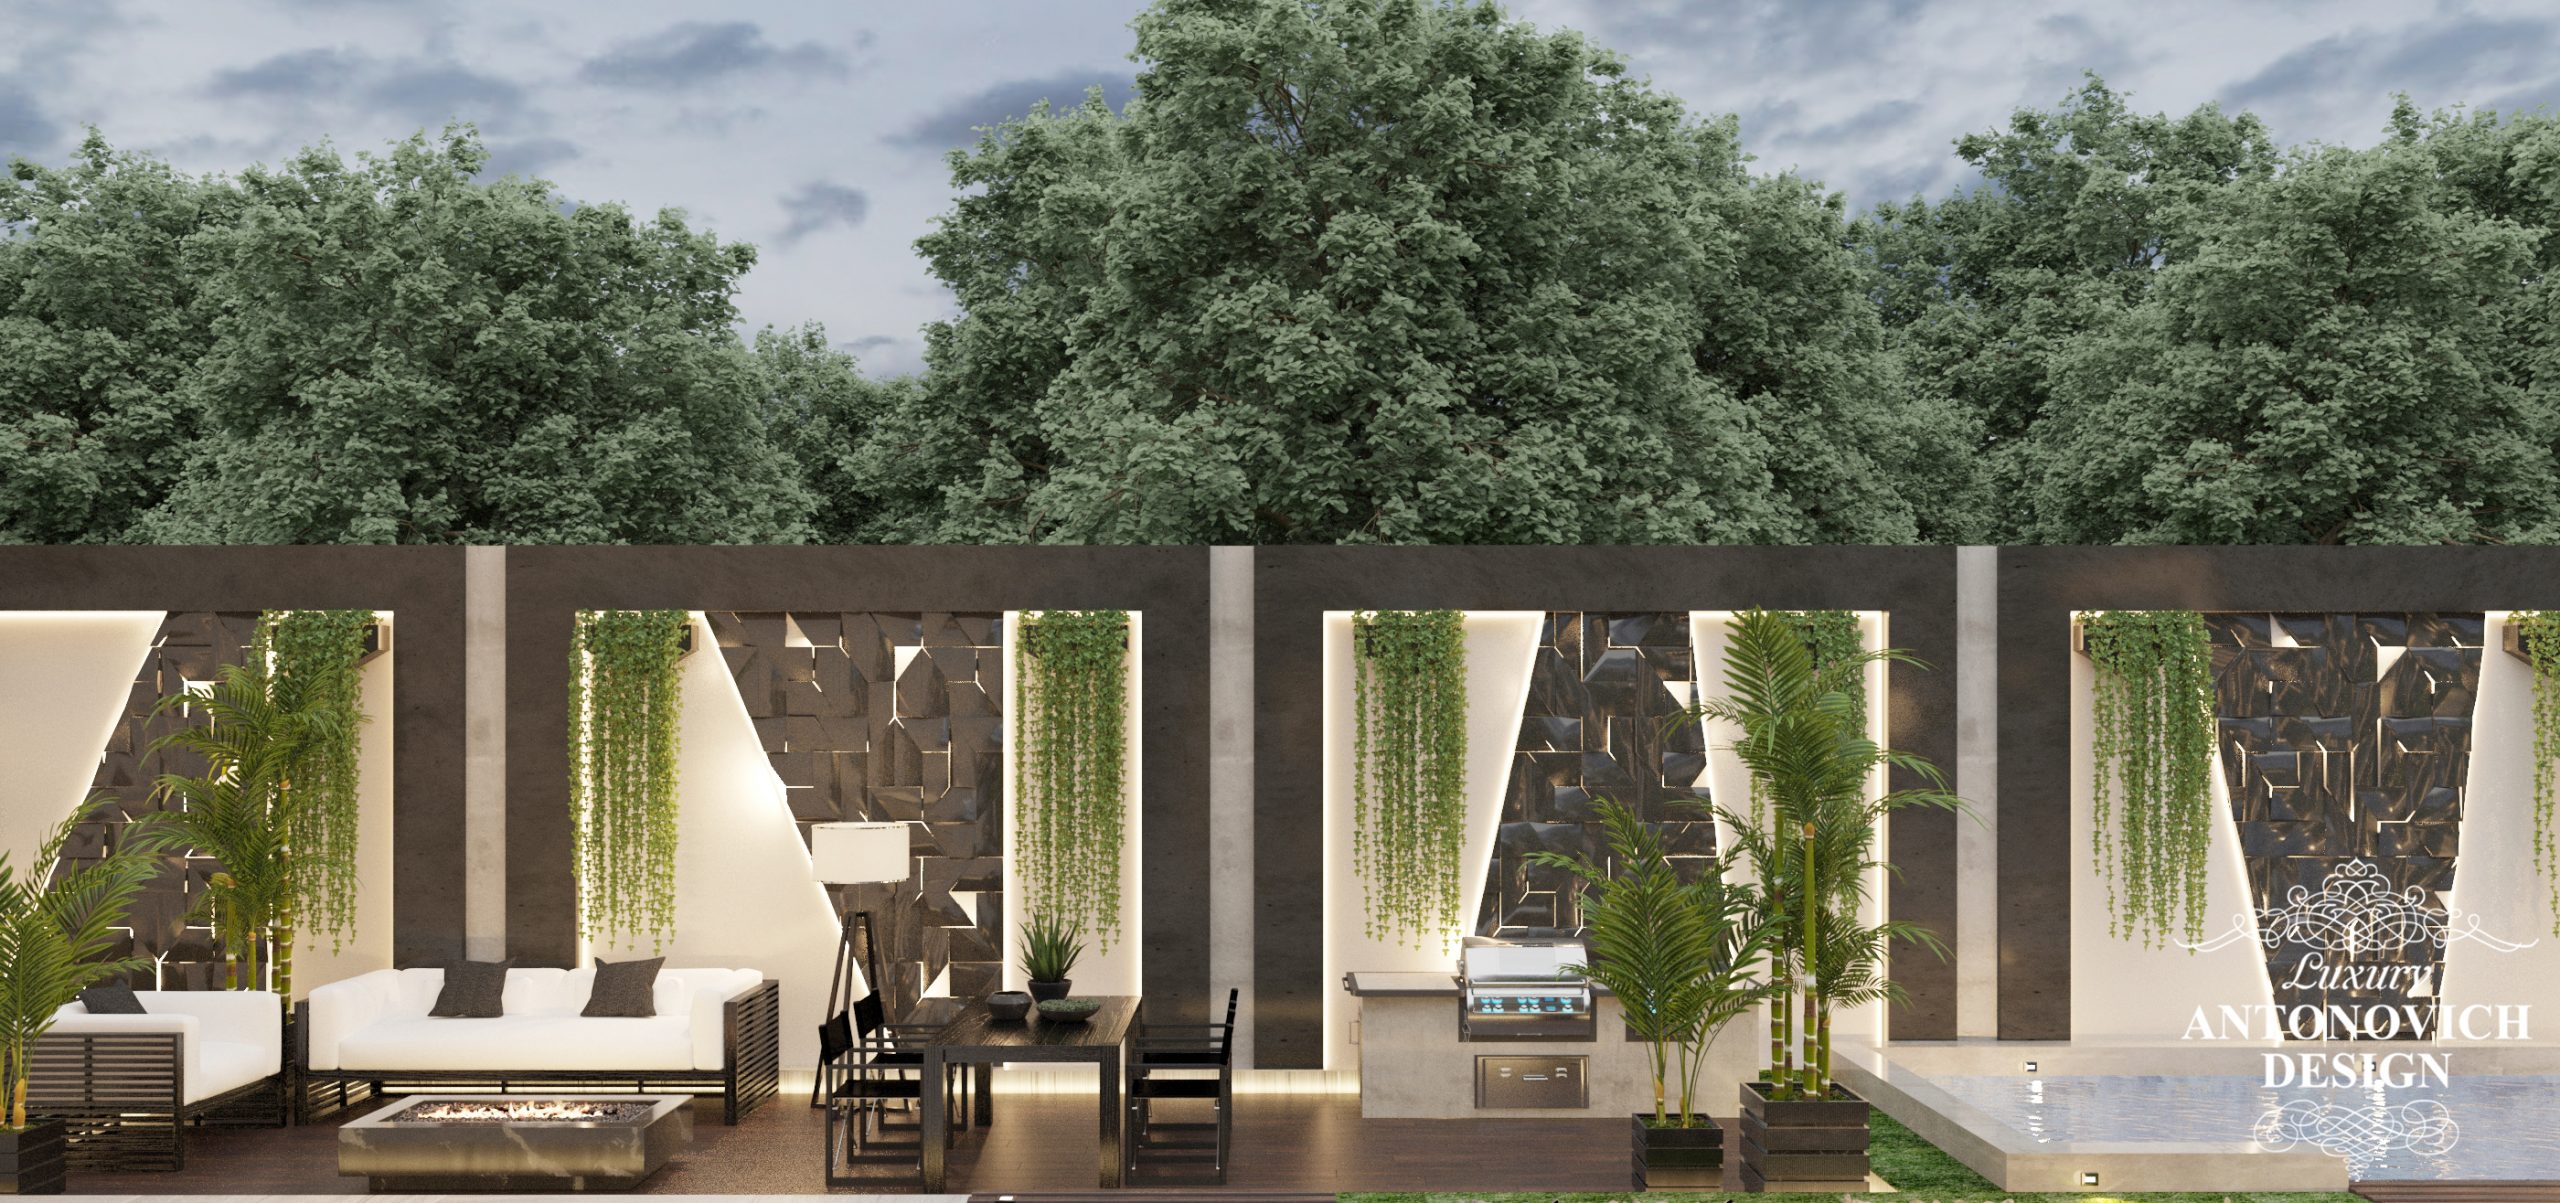 Авторський дизайнерський проект екстер'єру будинку з використанням 3D панелей в дизайні настінного покриття